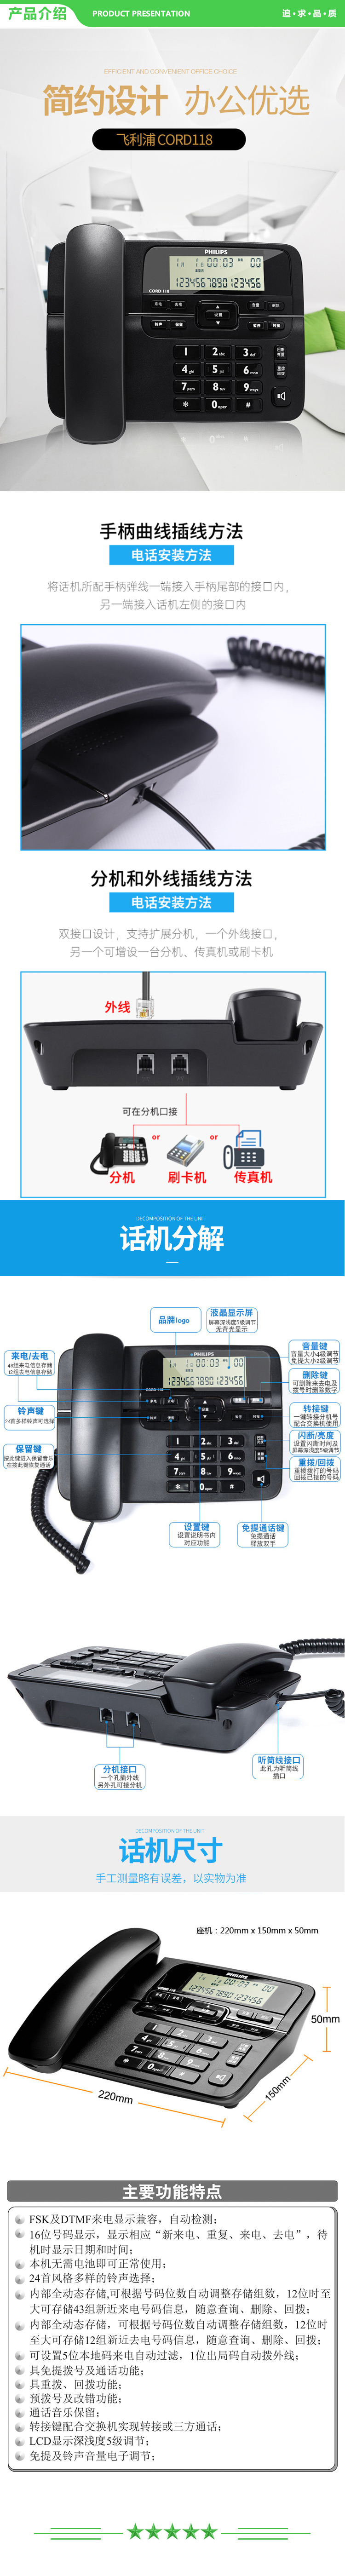 飞利浦 PHILIPS CORD118 电话机座机 固定电话 办公家用 来电显示 双接口 免电池 灰色 .jpg